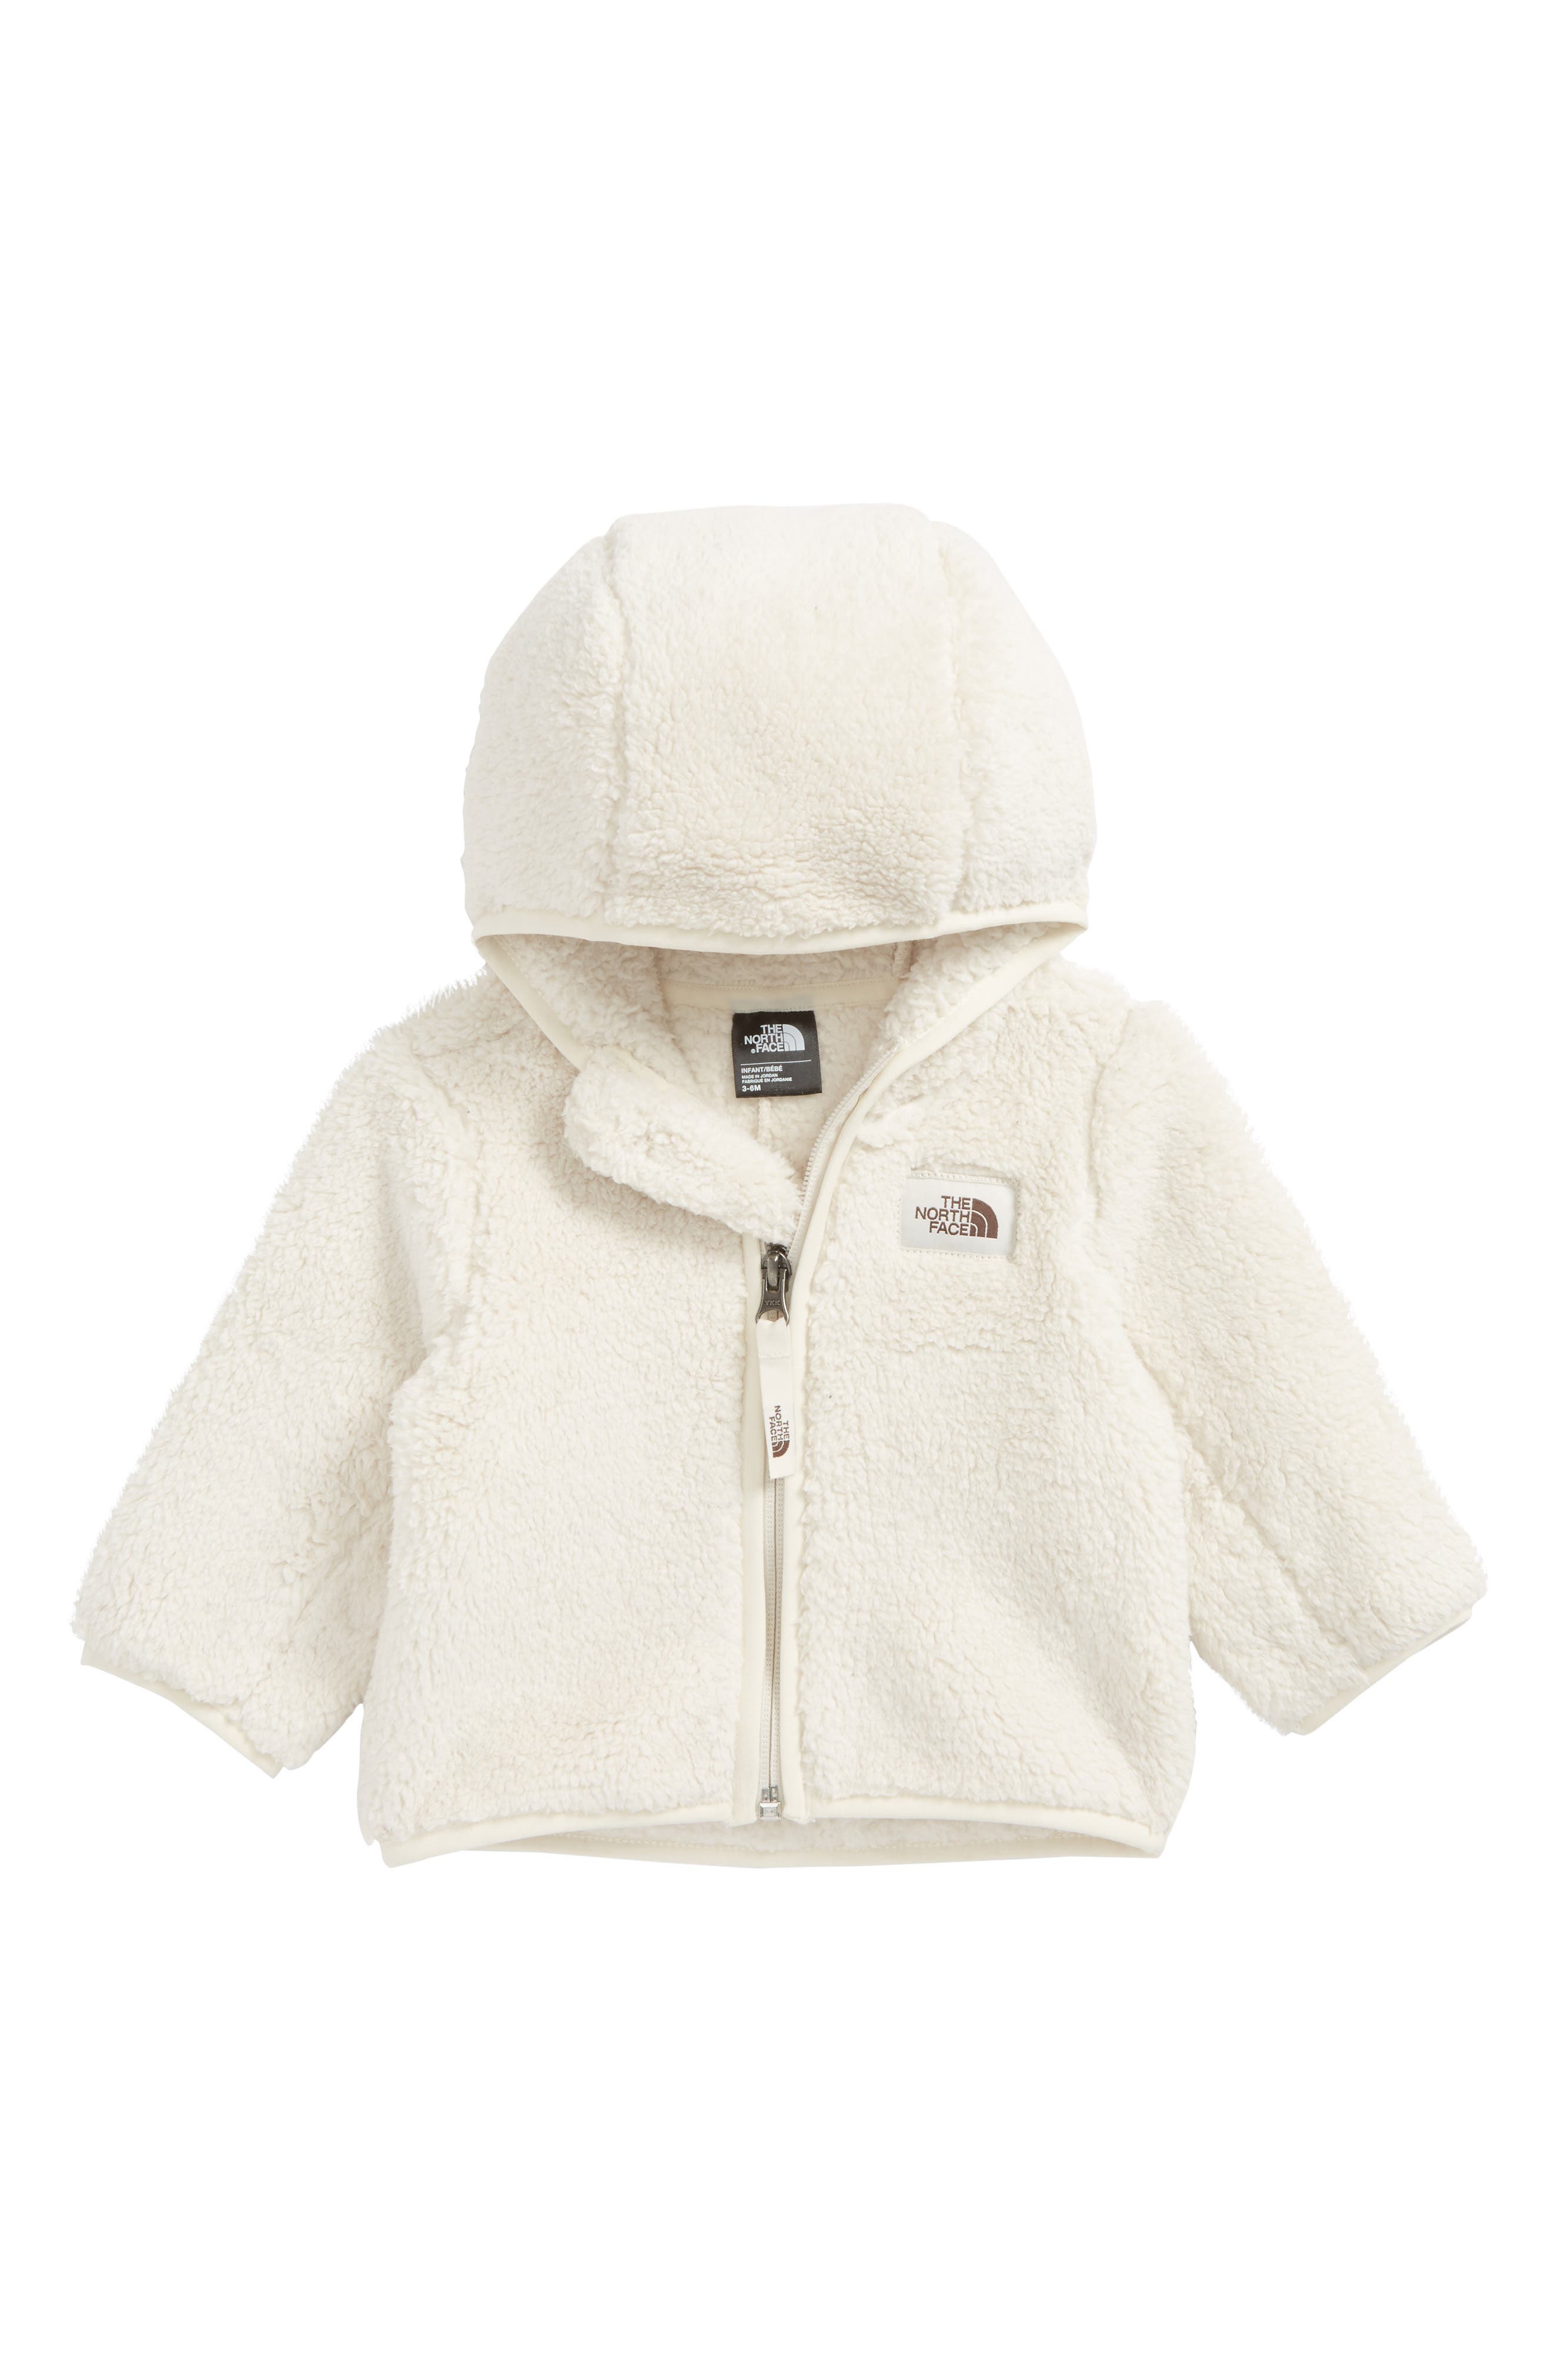 north face baby fleece jacket